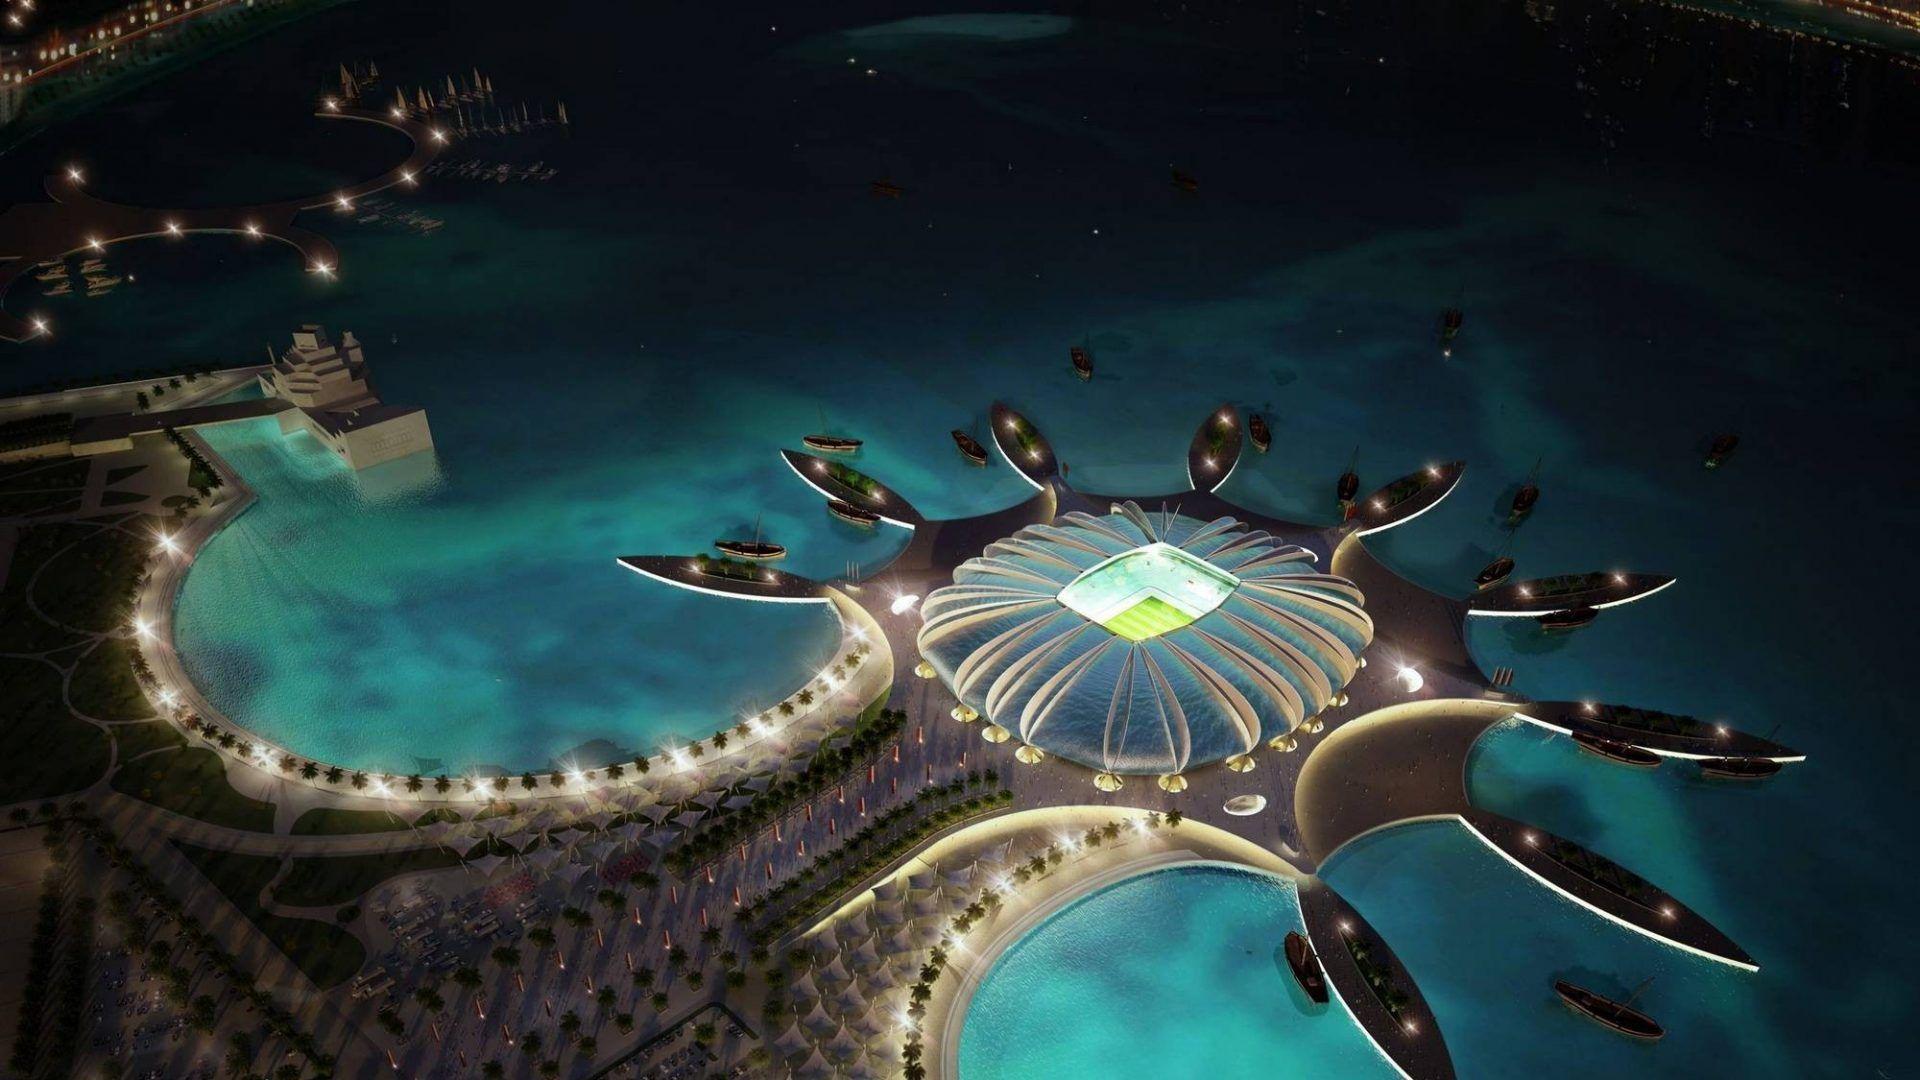 Qatar Tag wallpaper: Qatar Football Stadium Cool Architecture